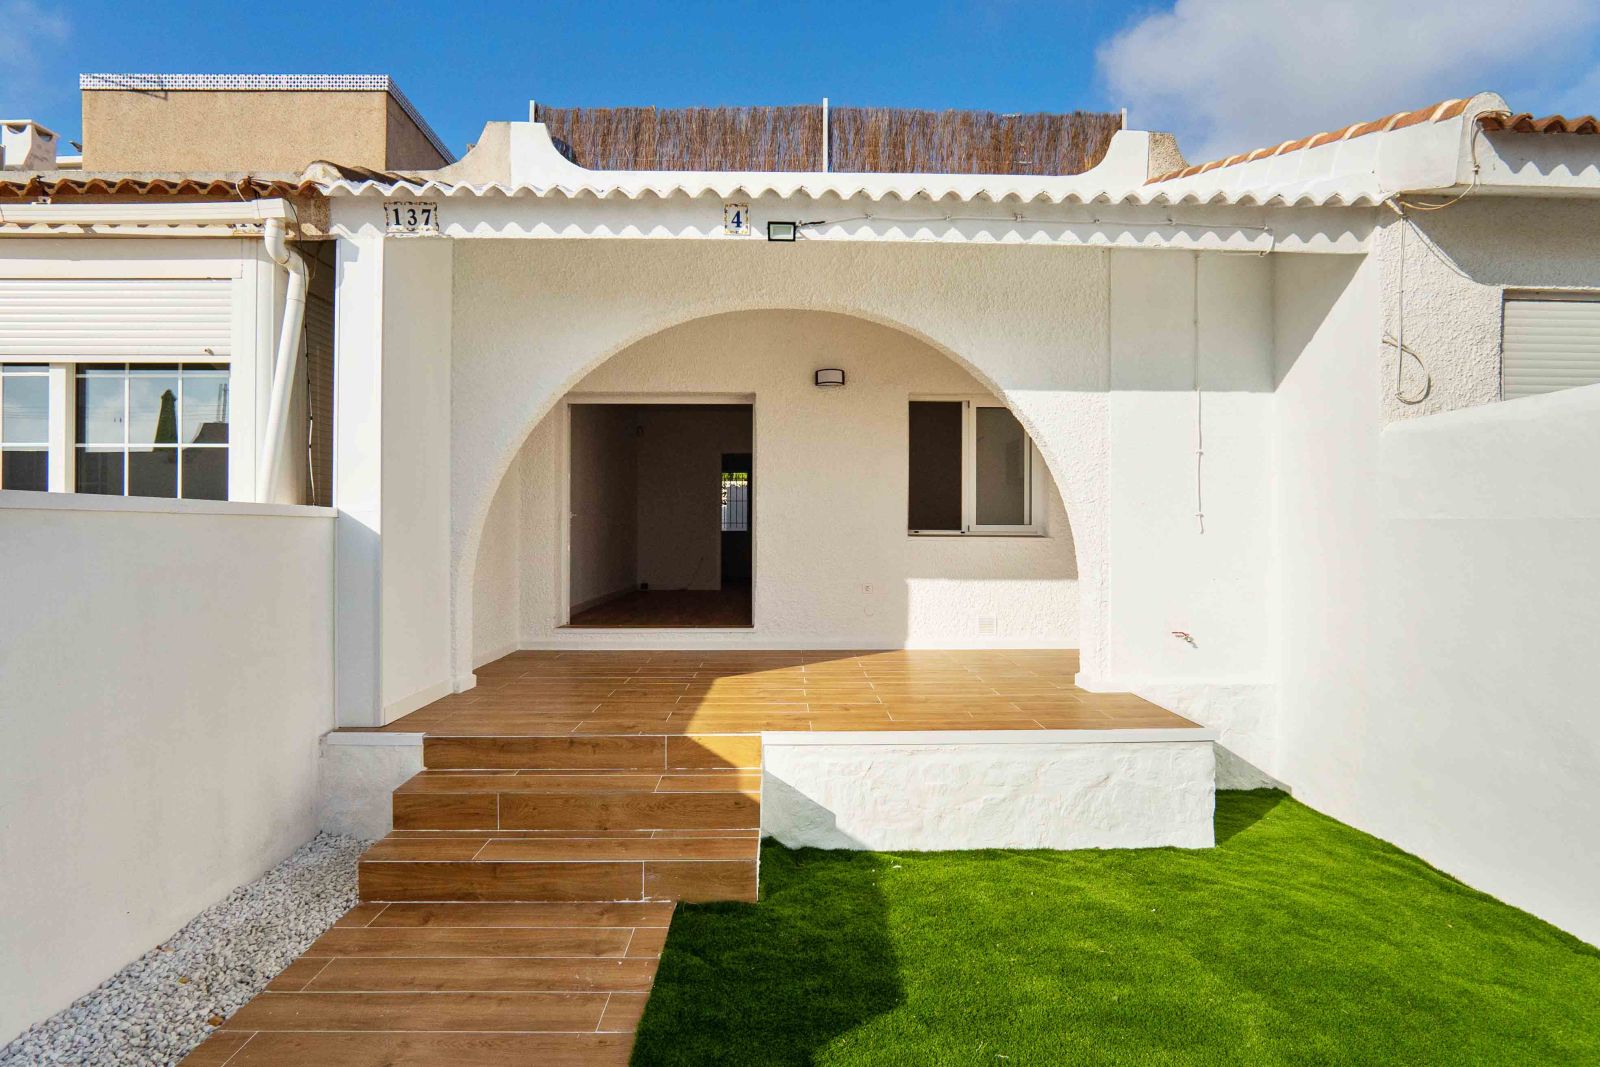 2 bedroom house / villa for sale in San Miguel de Salinas, Costa Blanca